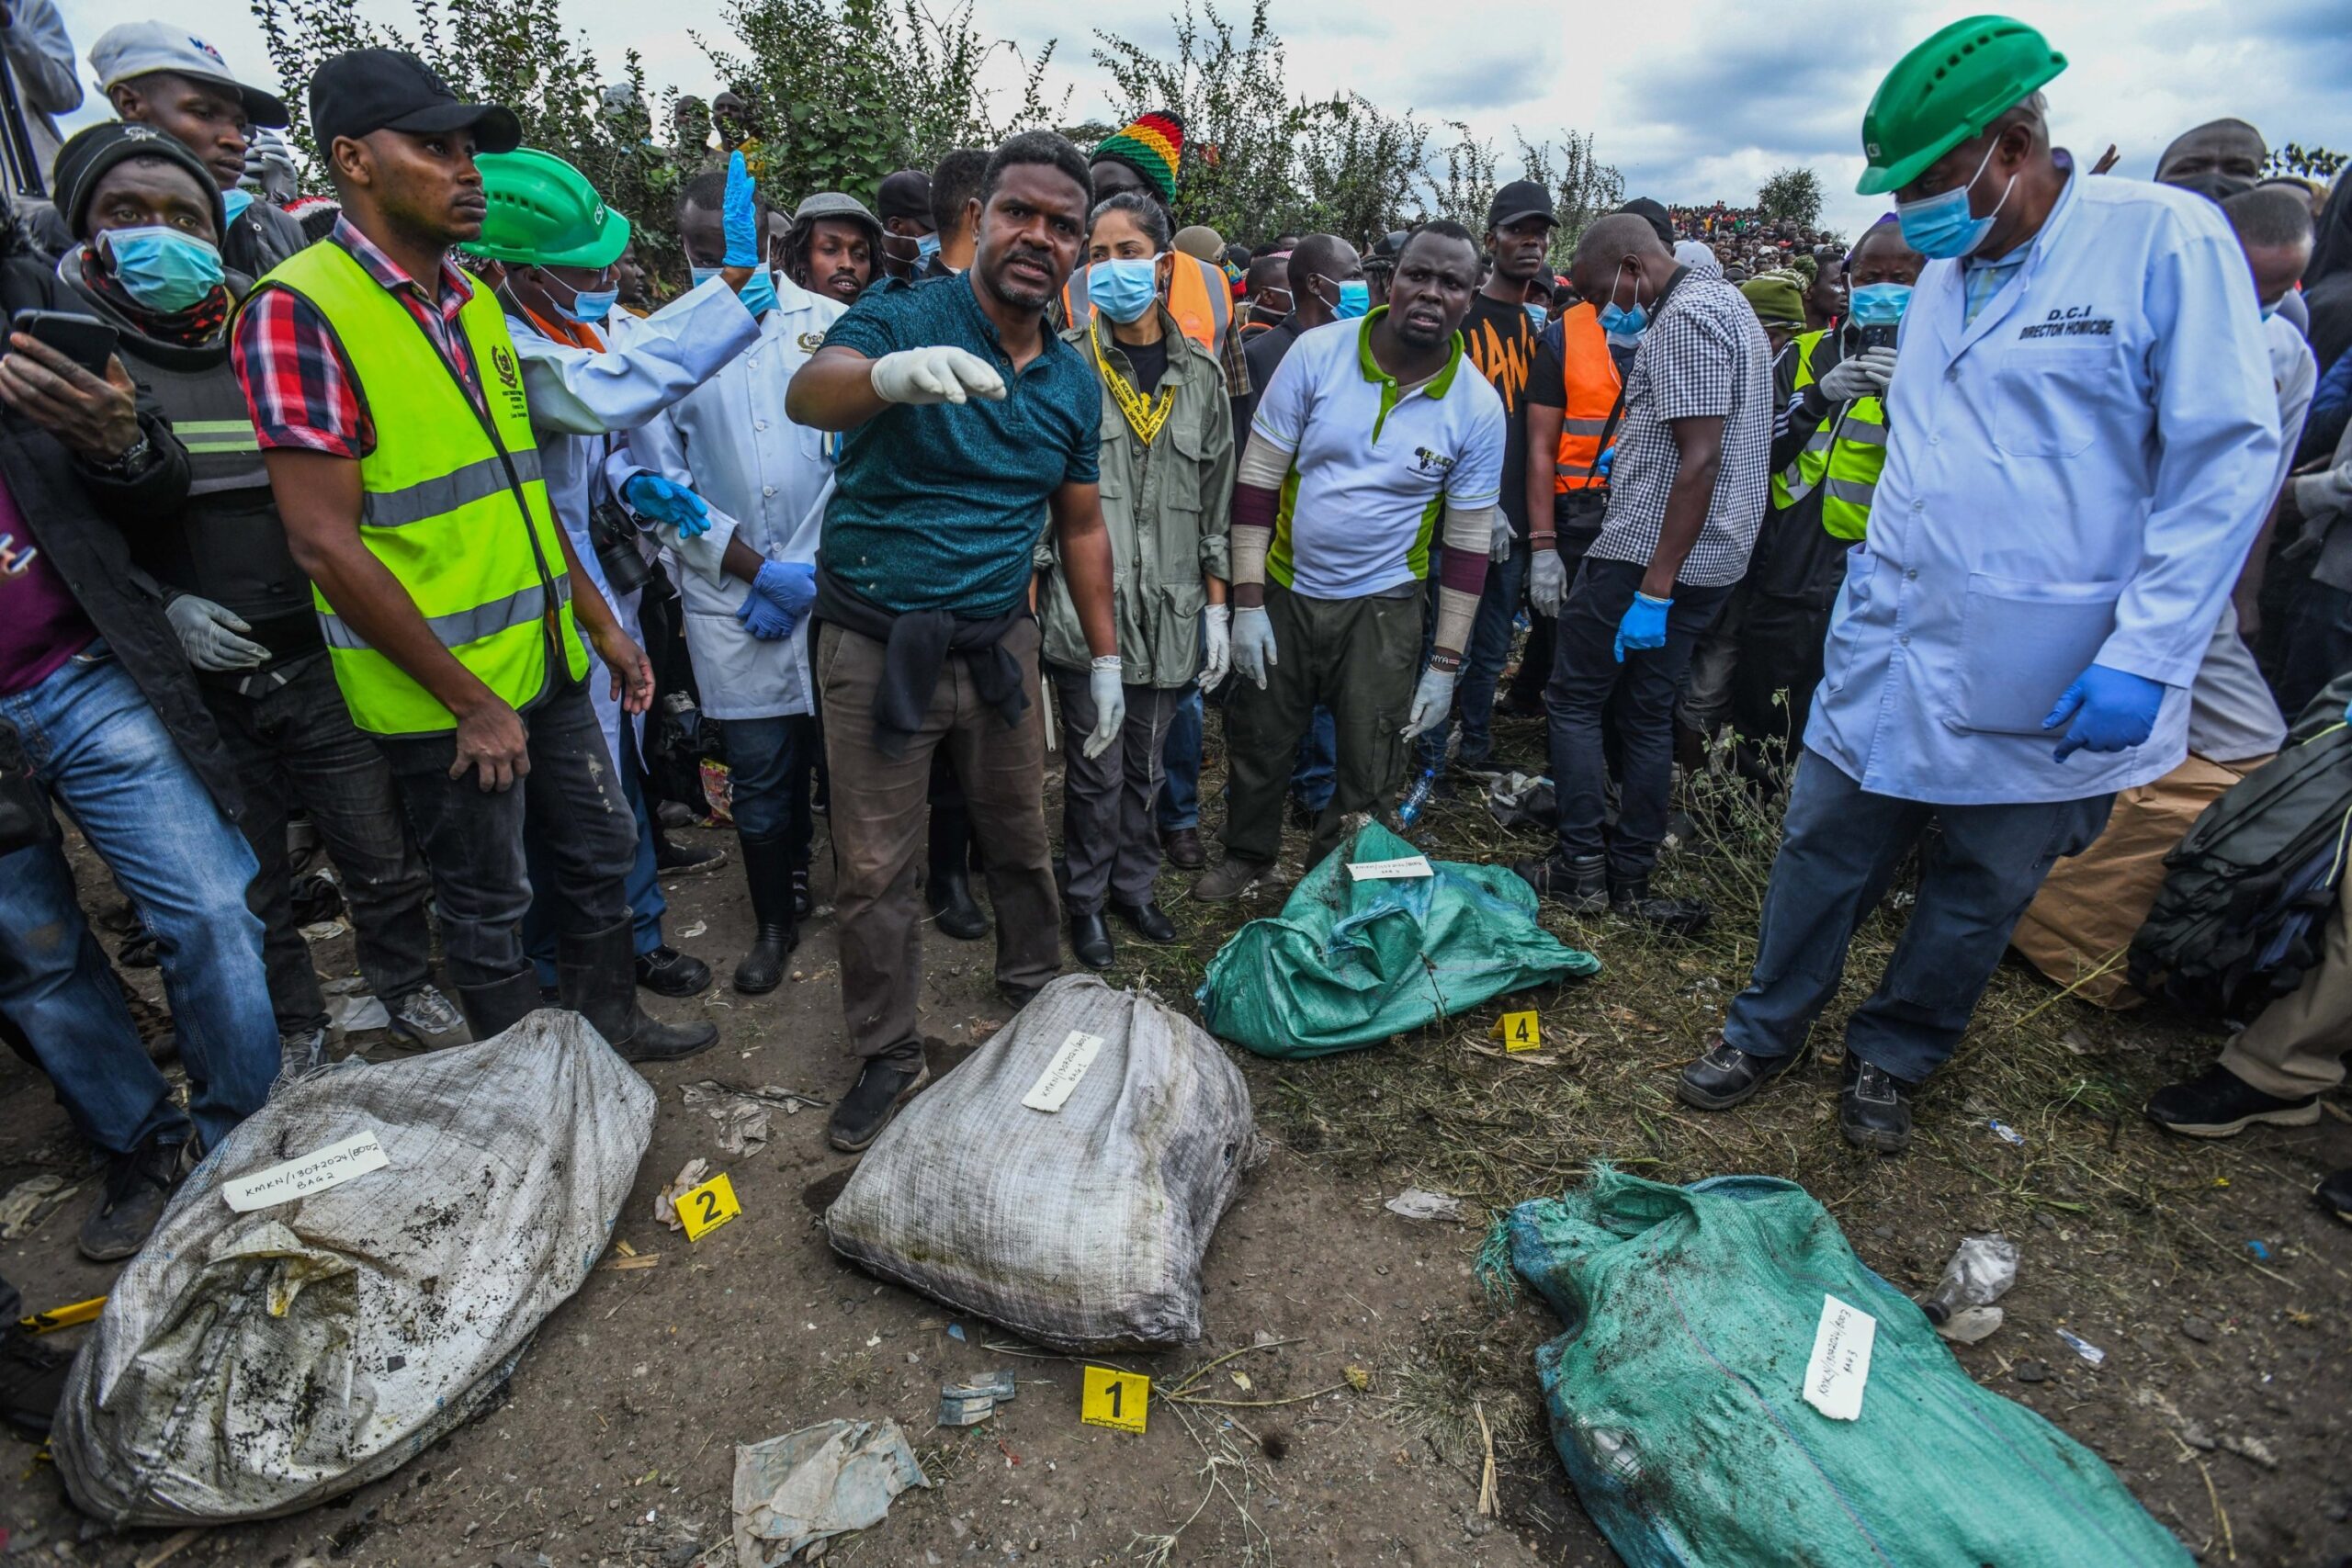 Kenya Police Arrest ‘Serial Killer’ After Bodies Discovered in Dump